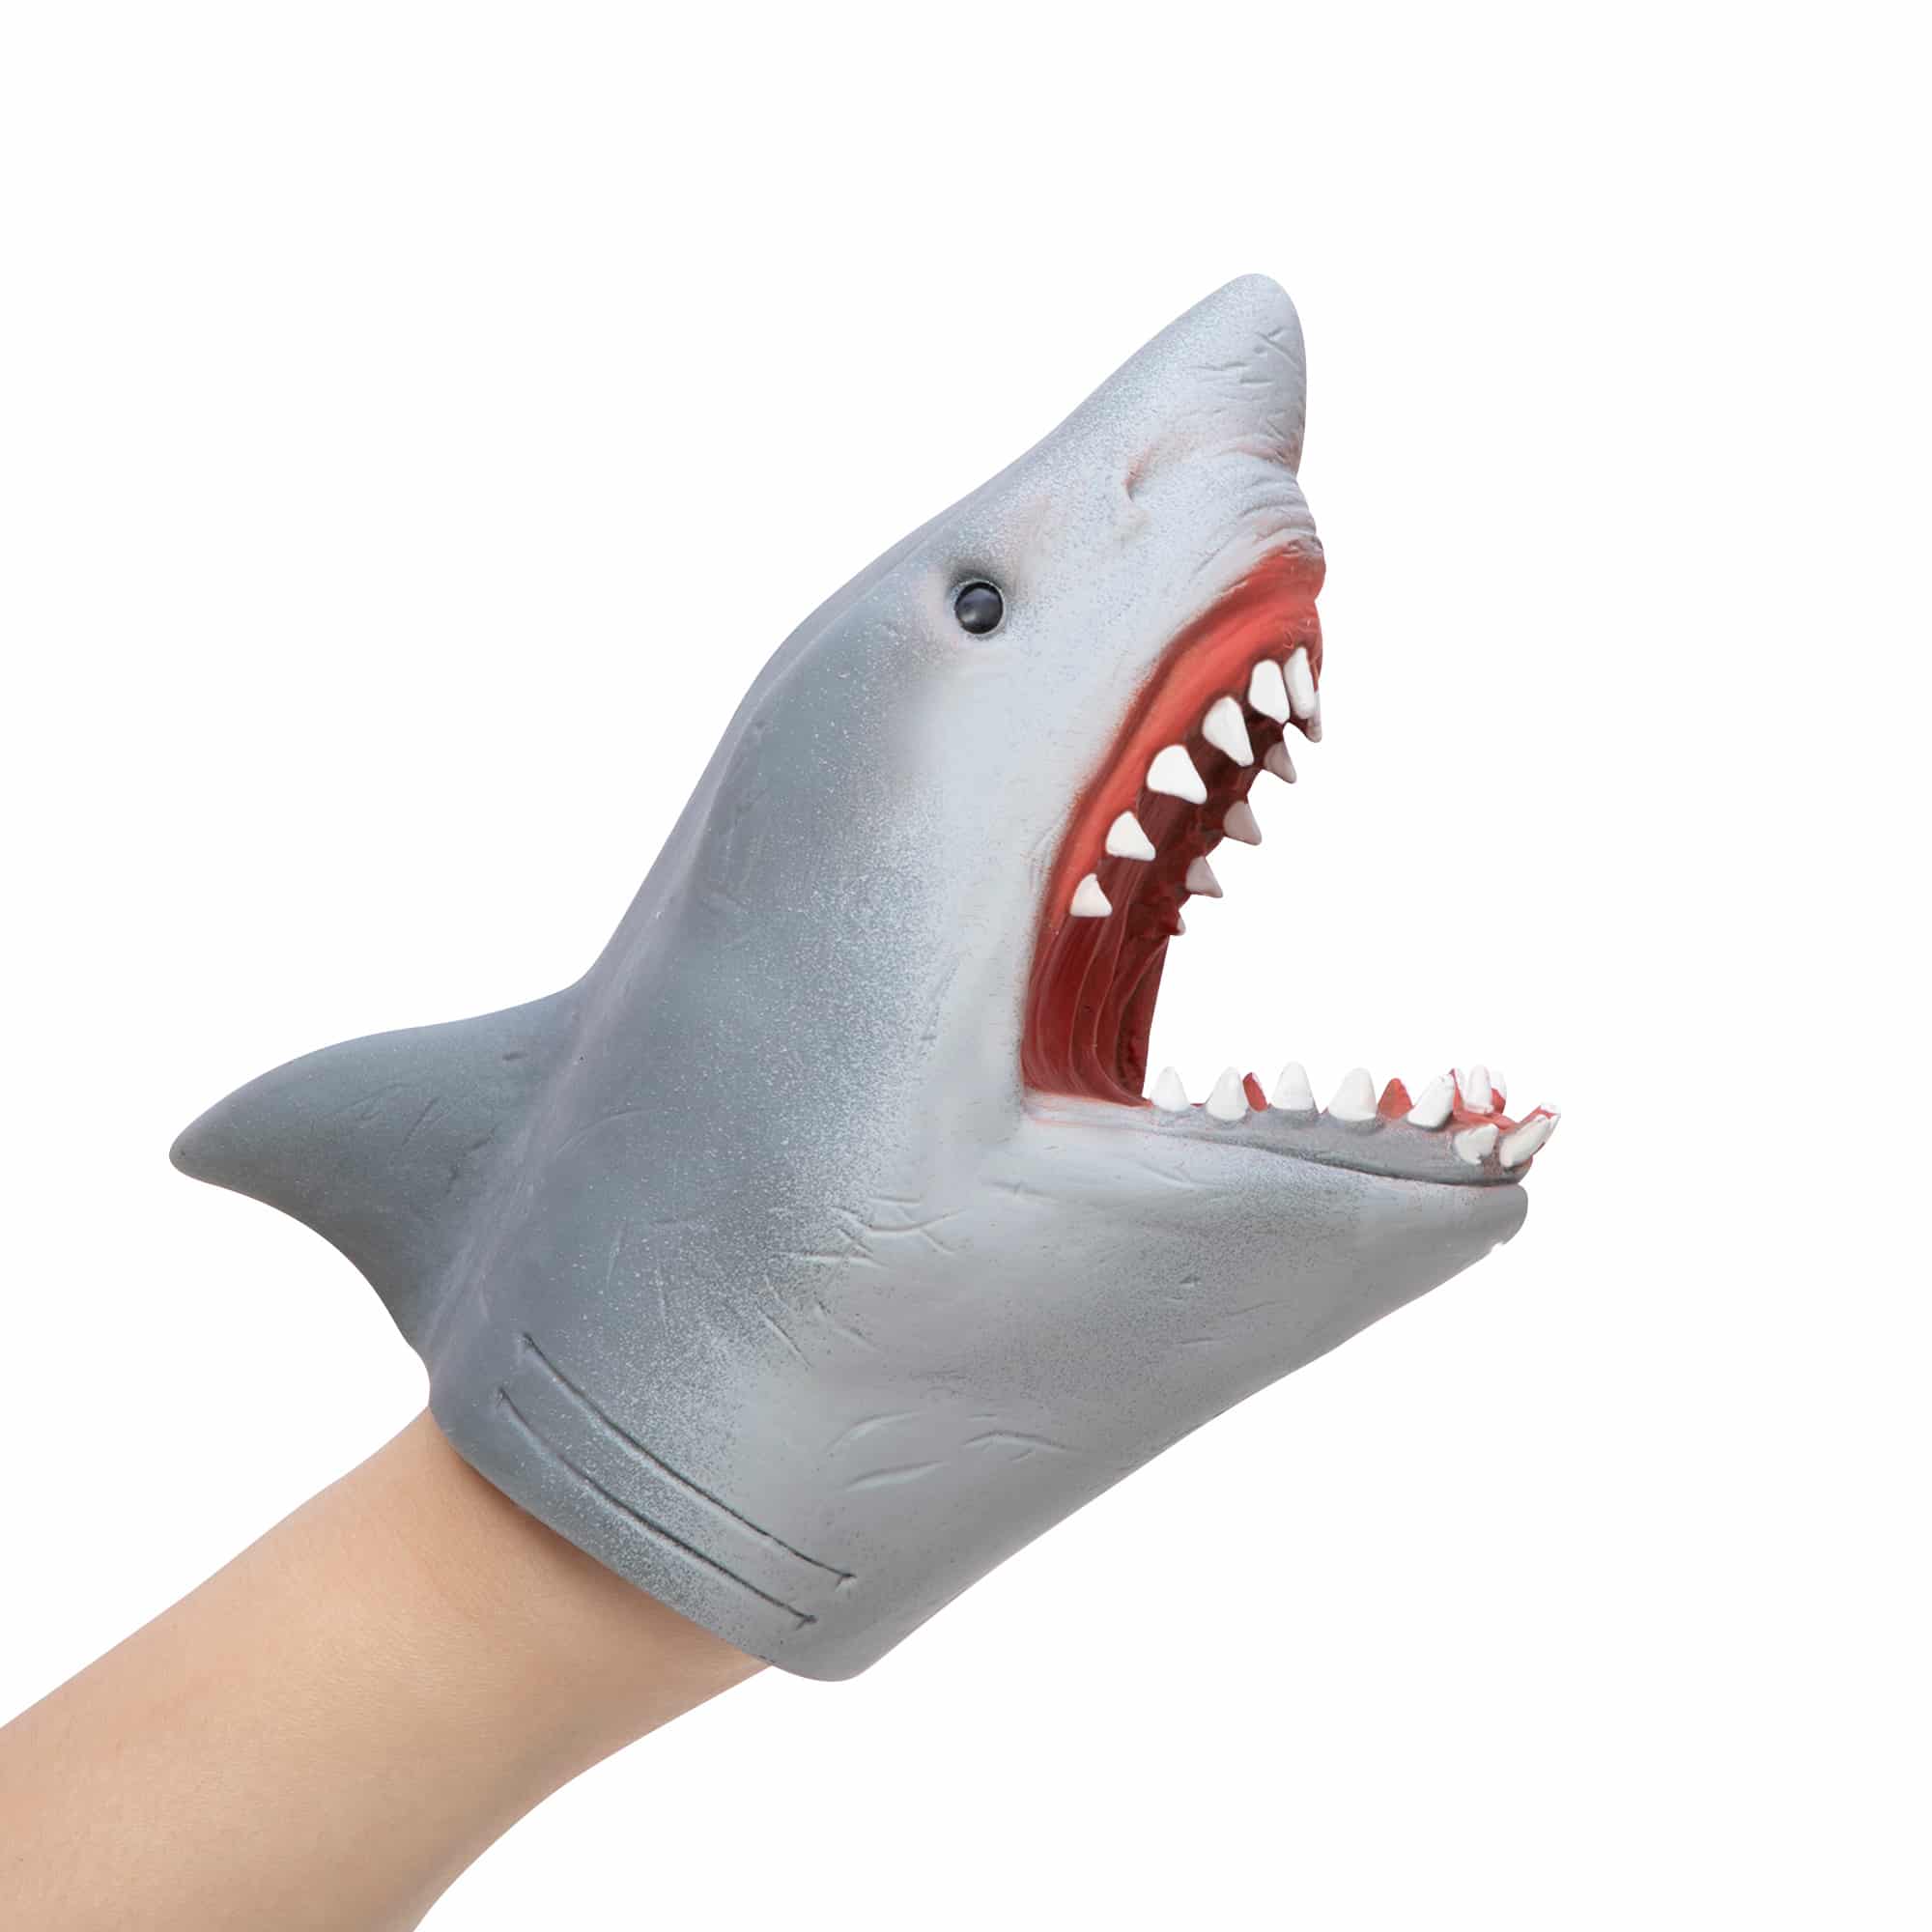 shark puppet puppet